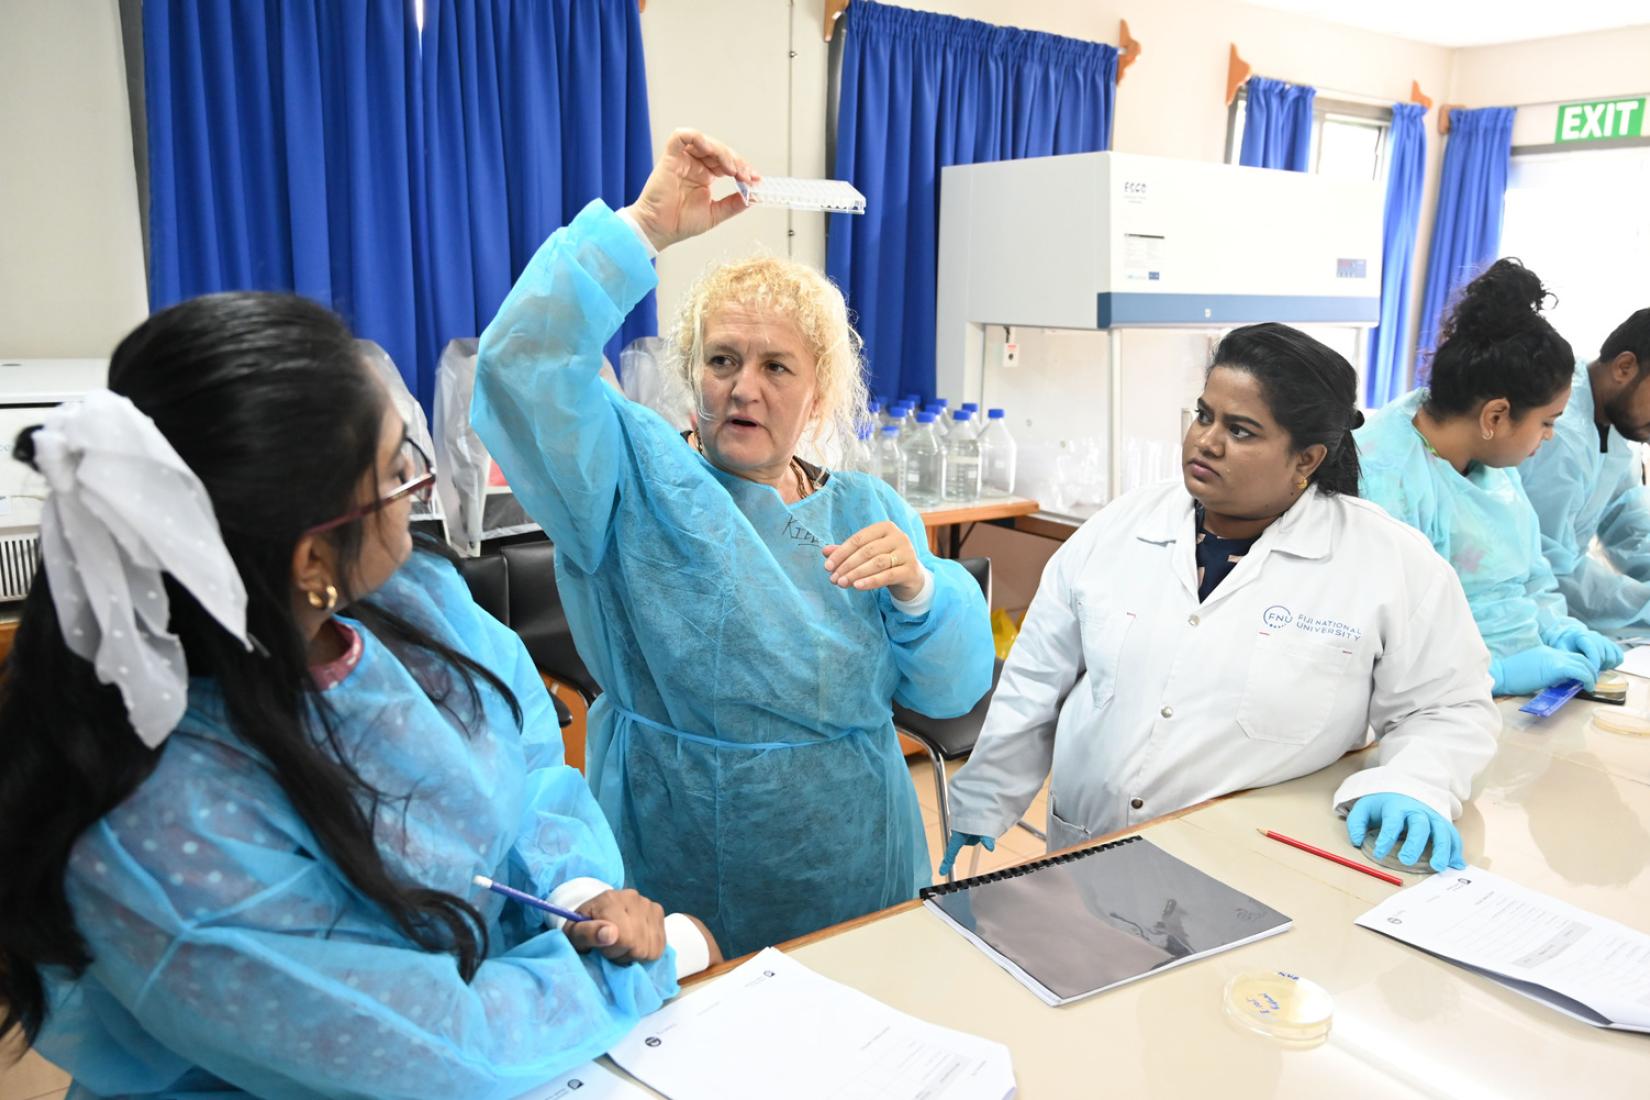 Female scientists in Fiji